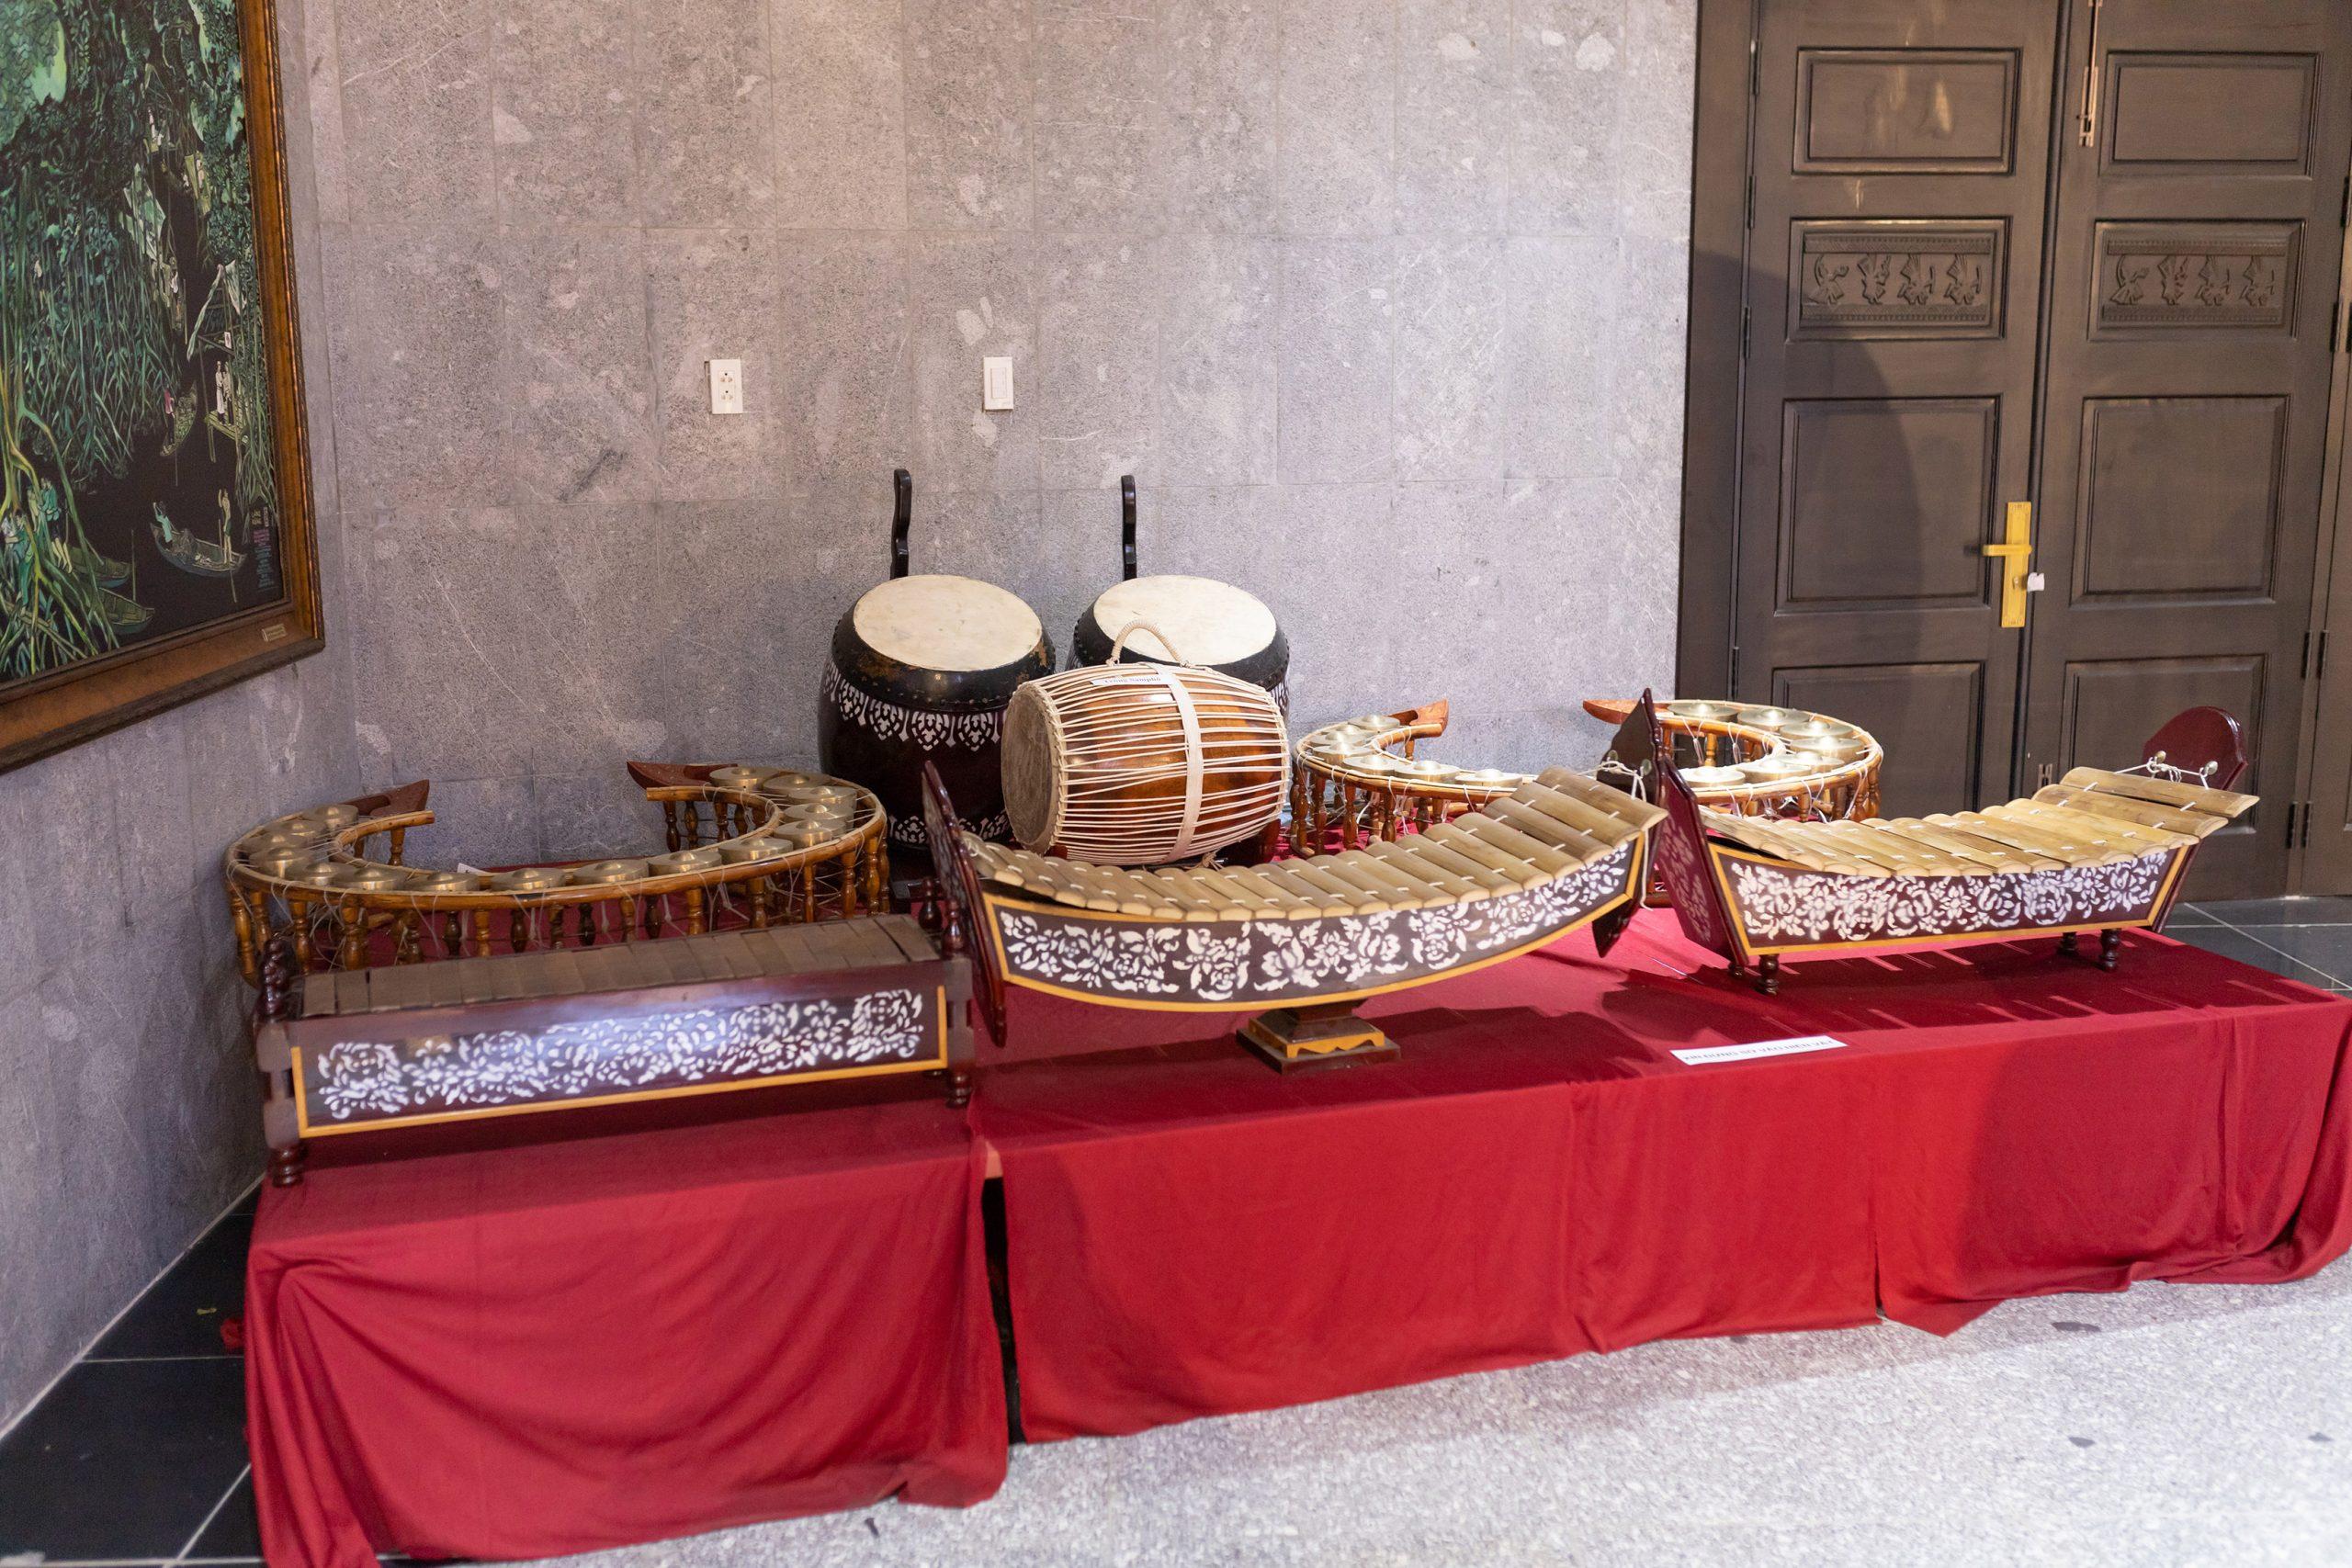 Bộ trống nhạc cụ được trưng bày tại lầu 1 Đền Hùng Cần Thơ (Nguồn: BlogAnChoi)